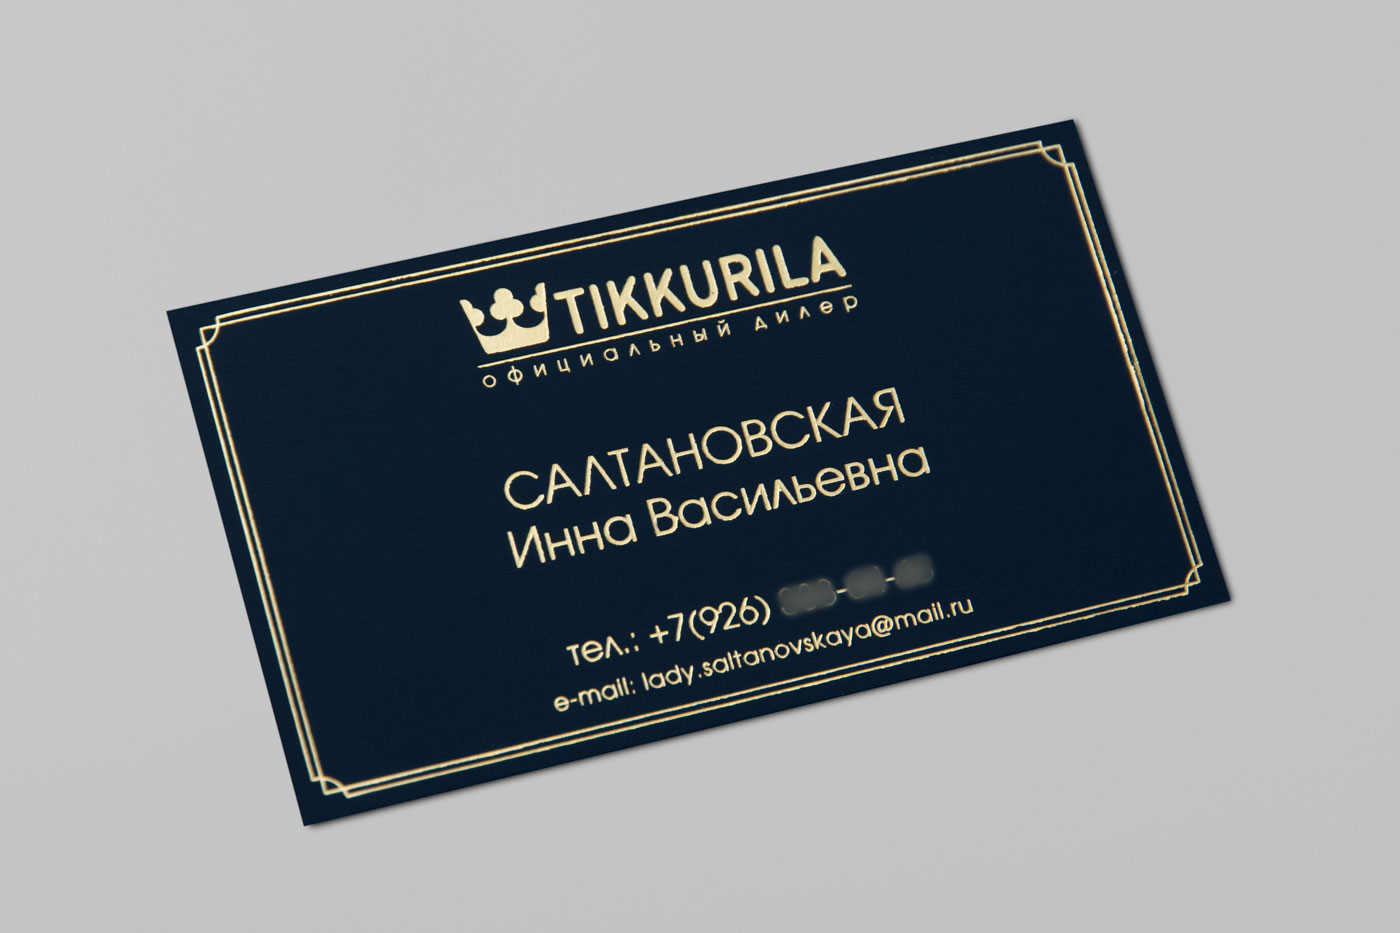 Визитка с золотым тиснением для компании Tikkurila